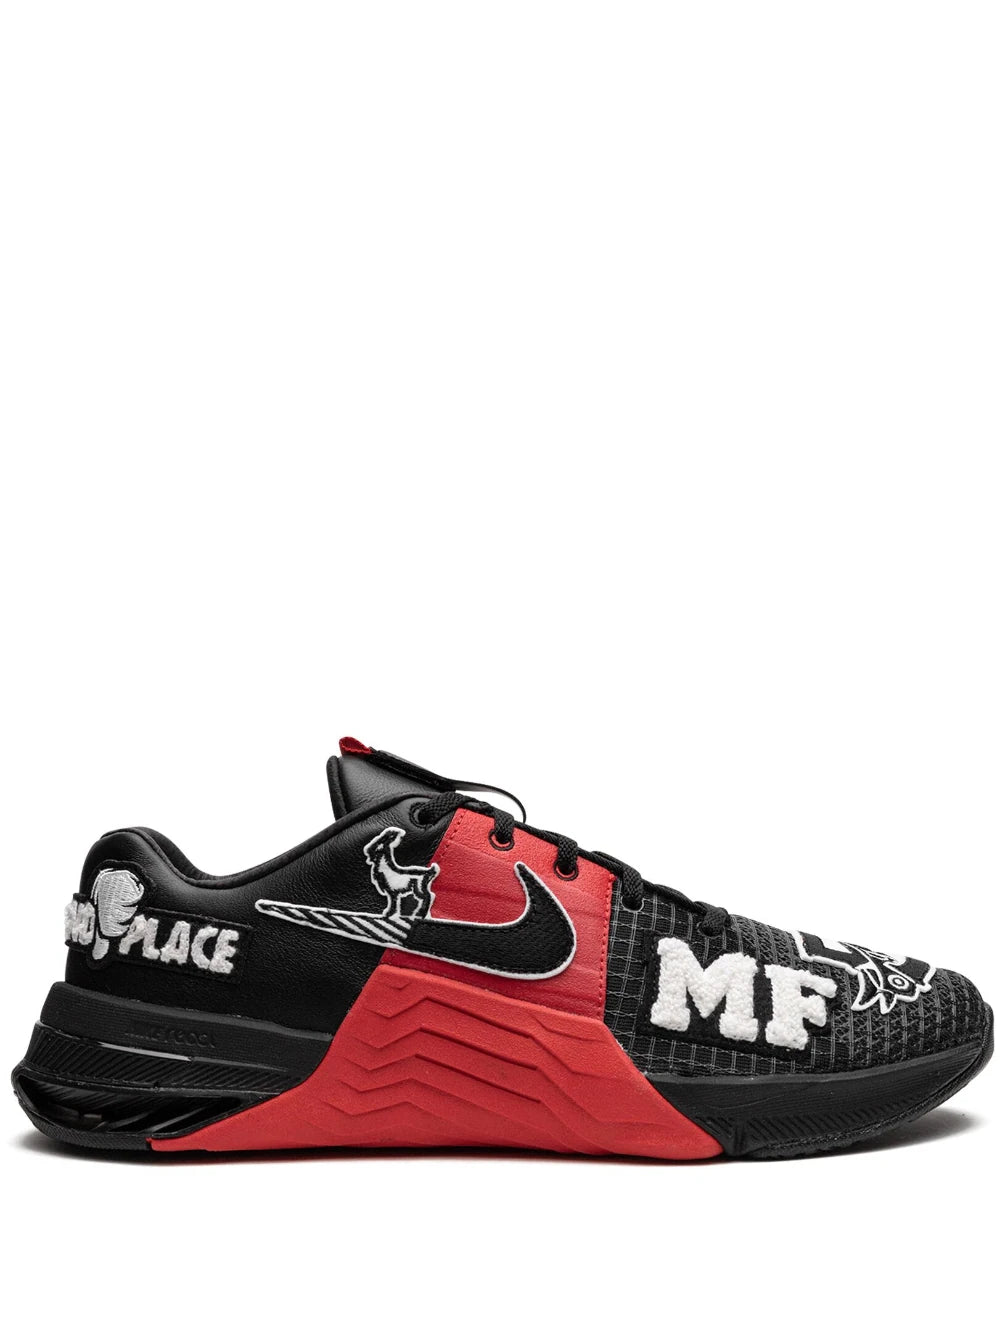 Nike Metcon 8 Original Matt Fraser Edition